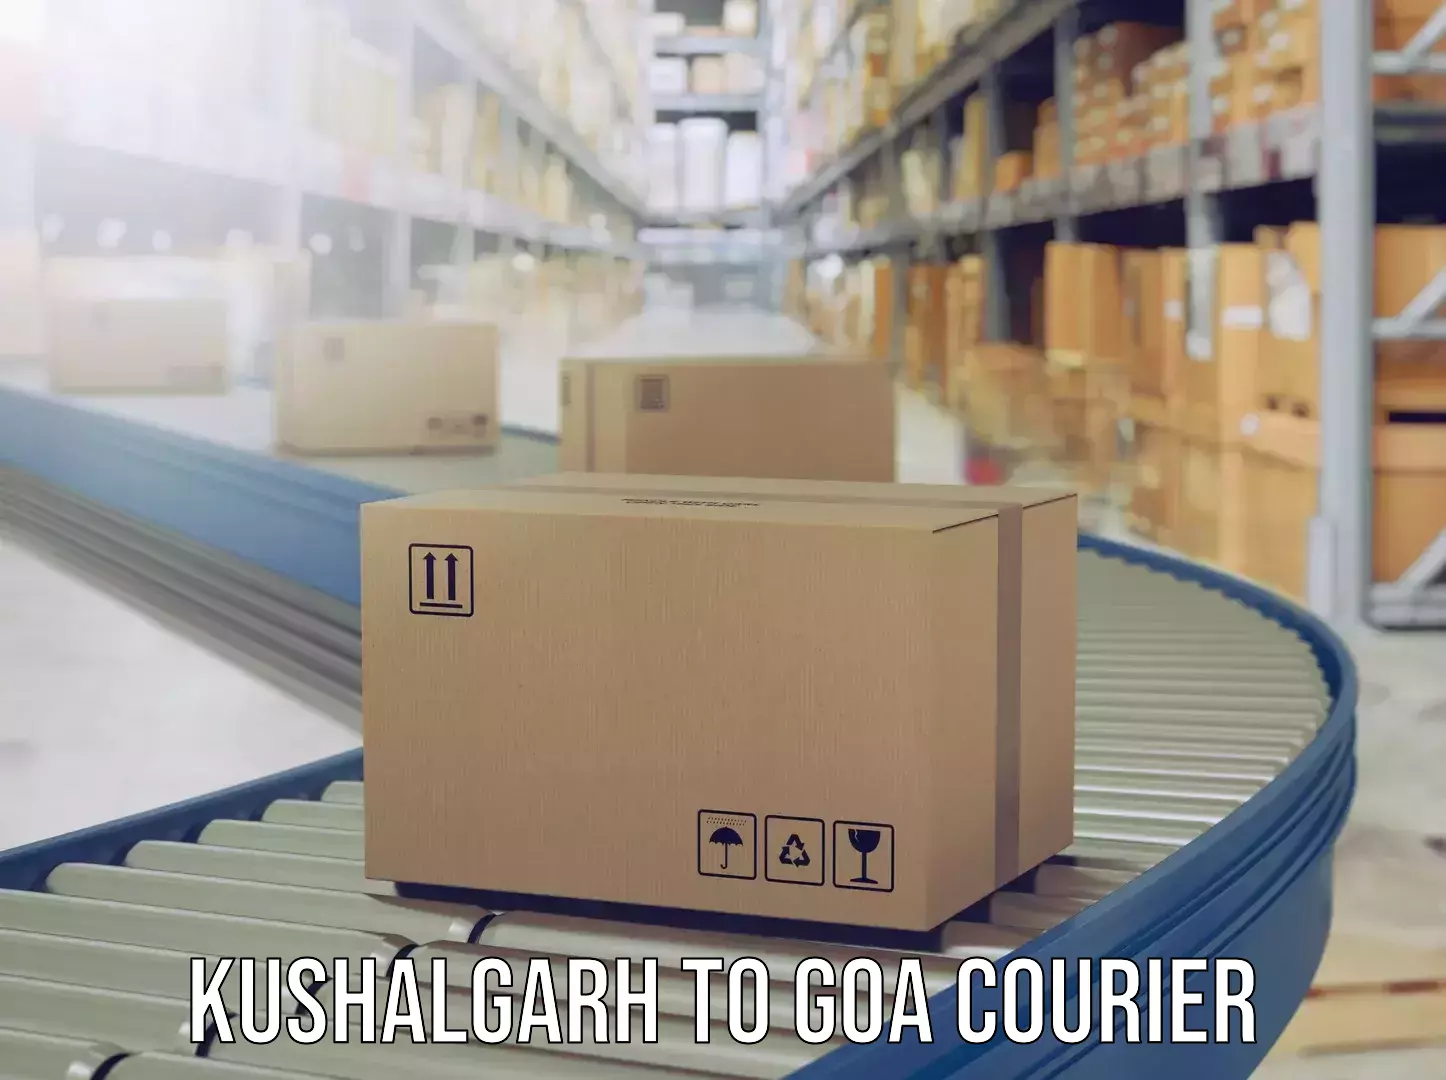 Luggage delivery app Kushalgarh to Goa